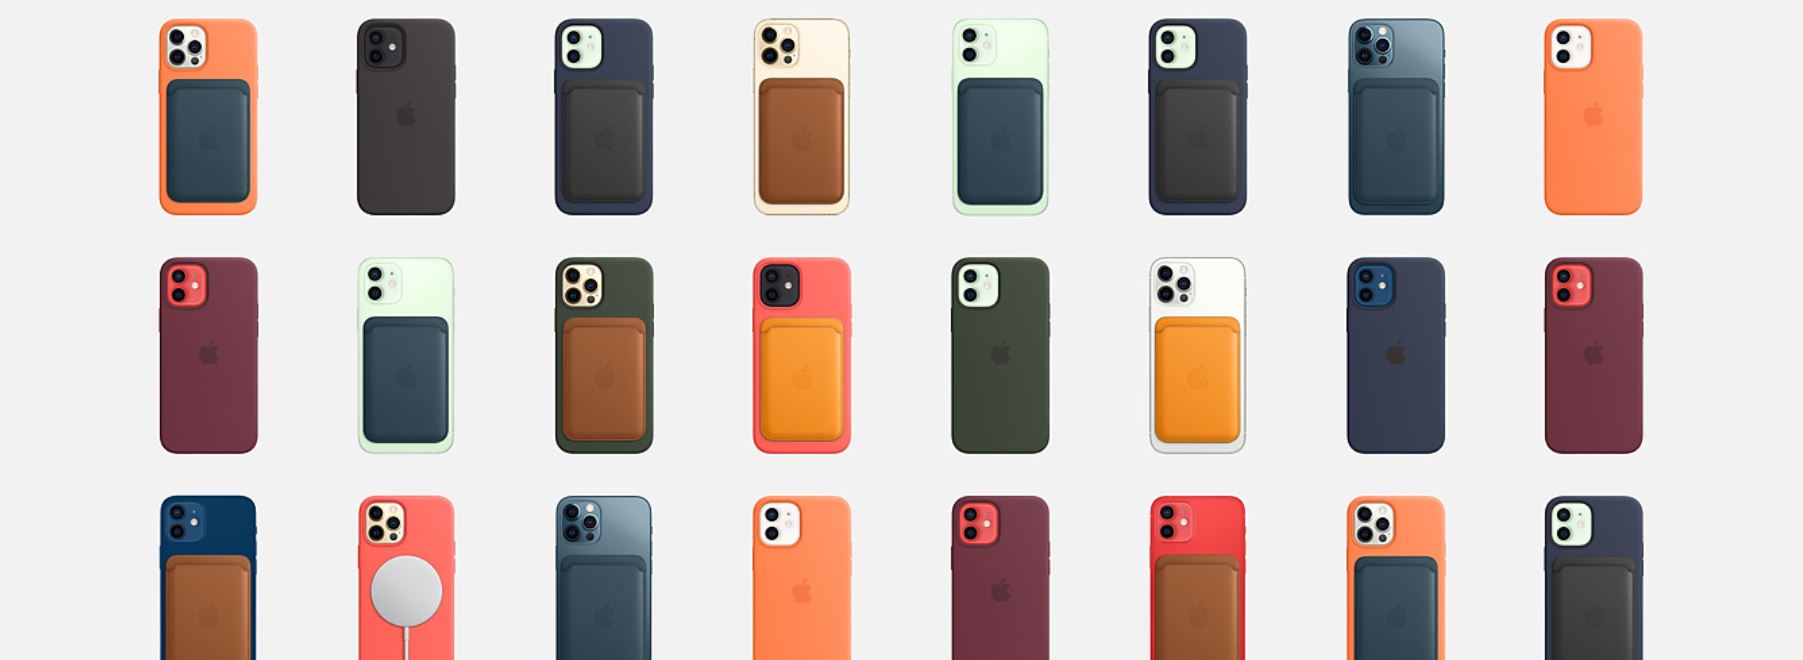 כיסוי סיליקון לאייפון 12 פרו מקס עם iPhone 12 PRO MAX MagSafe - בצבעים איכות